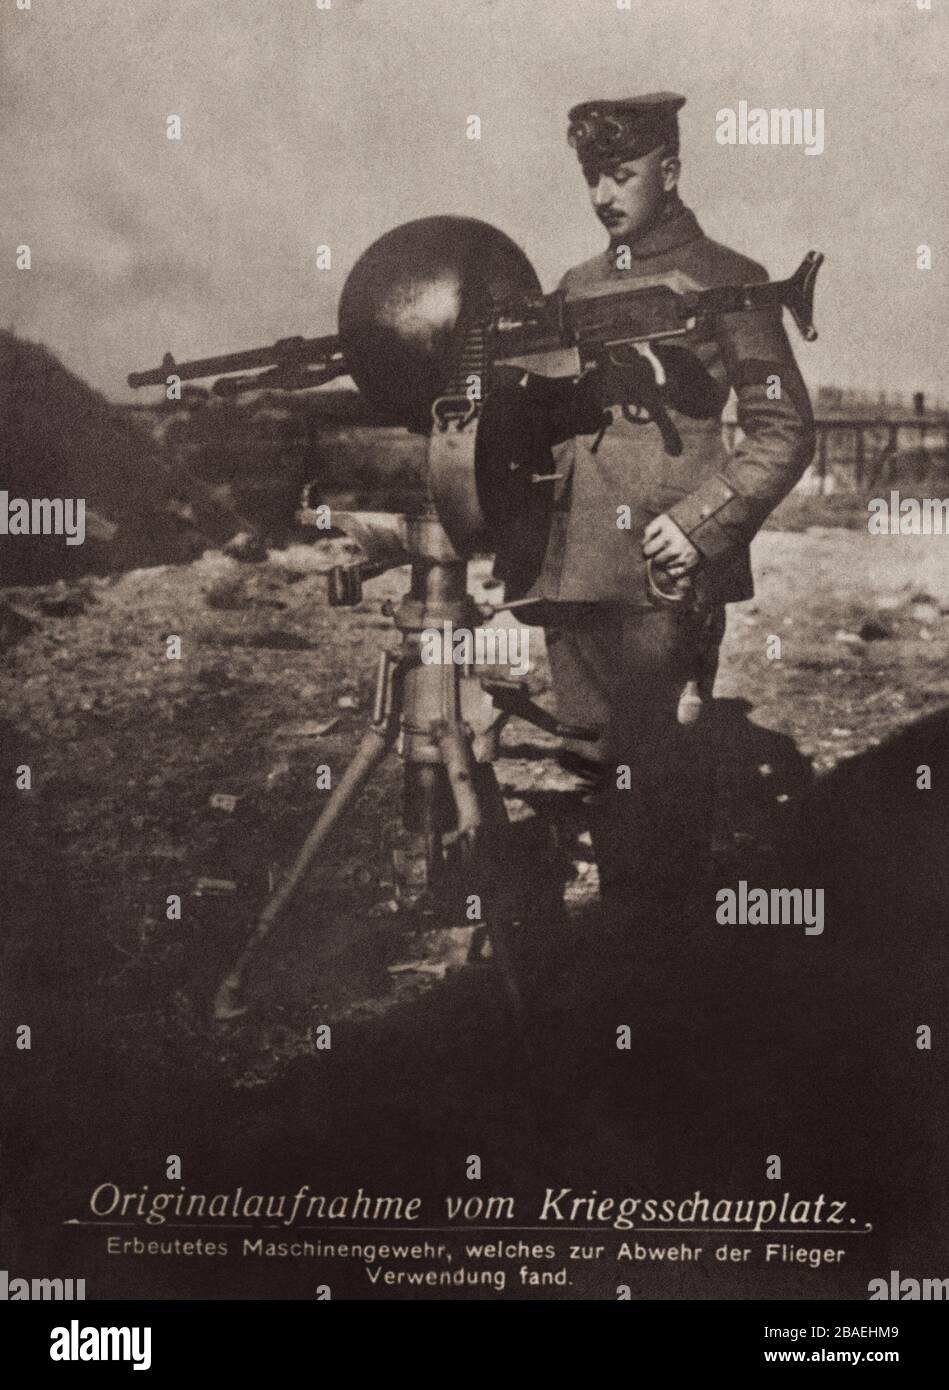 Vecchia immagine della prima guerra mondiale catturata mitragliatrice, che è stata usata per difendere i aviatori Foto Stock